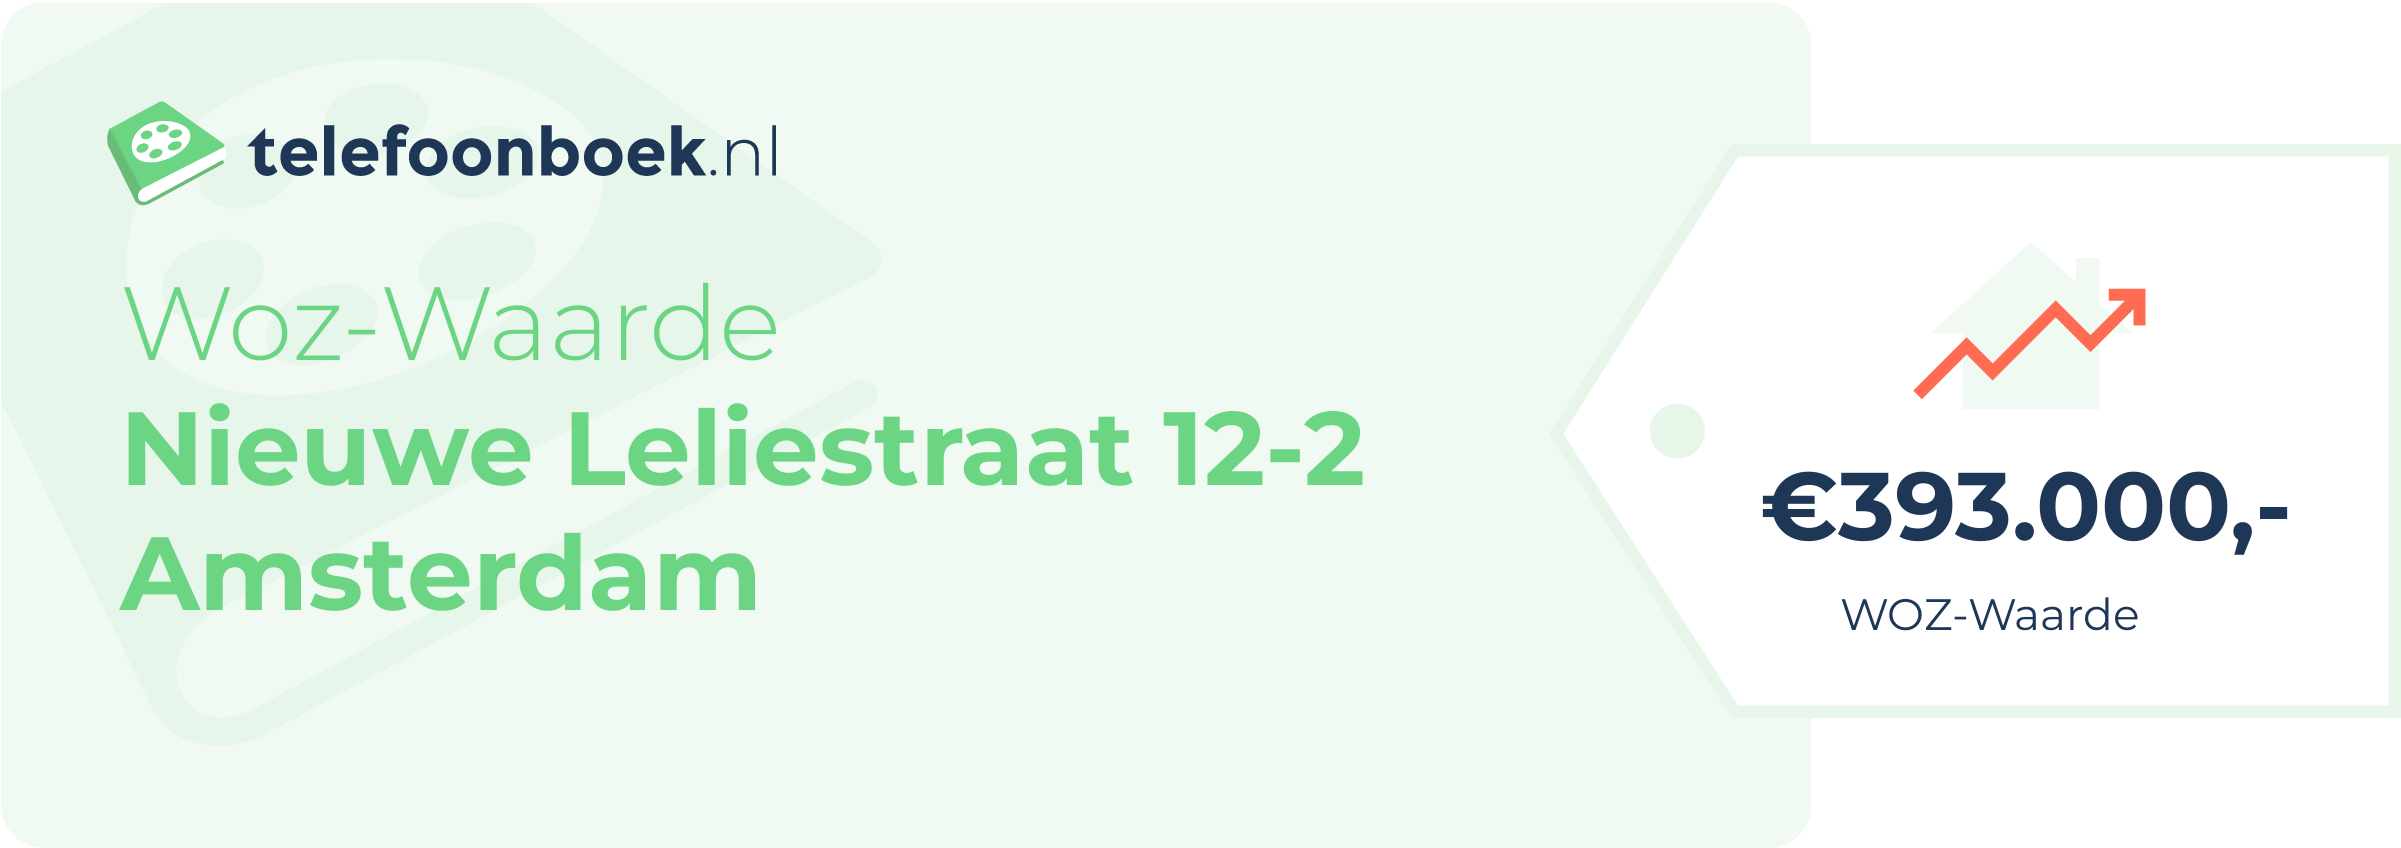 WOZ-waarde Nieuwe Leliestraat 12-2 Amsterdam